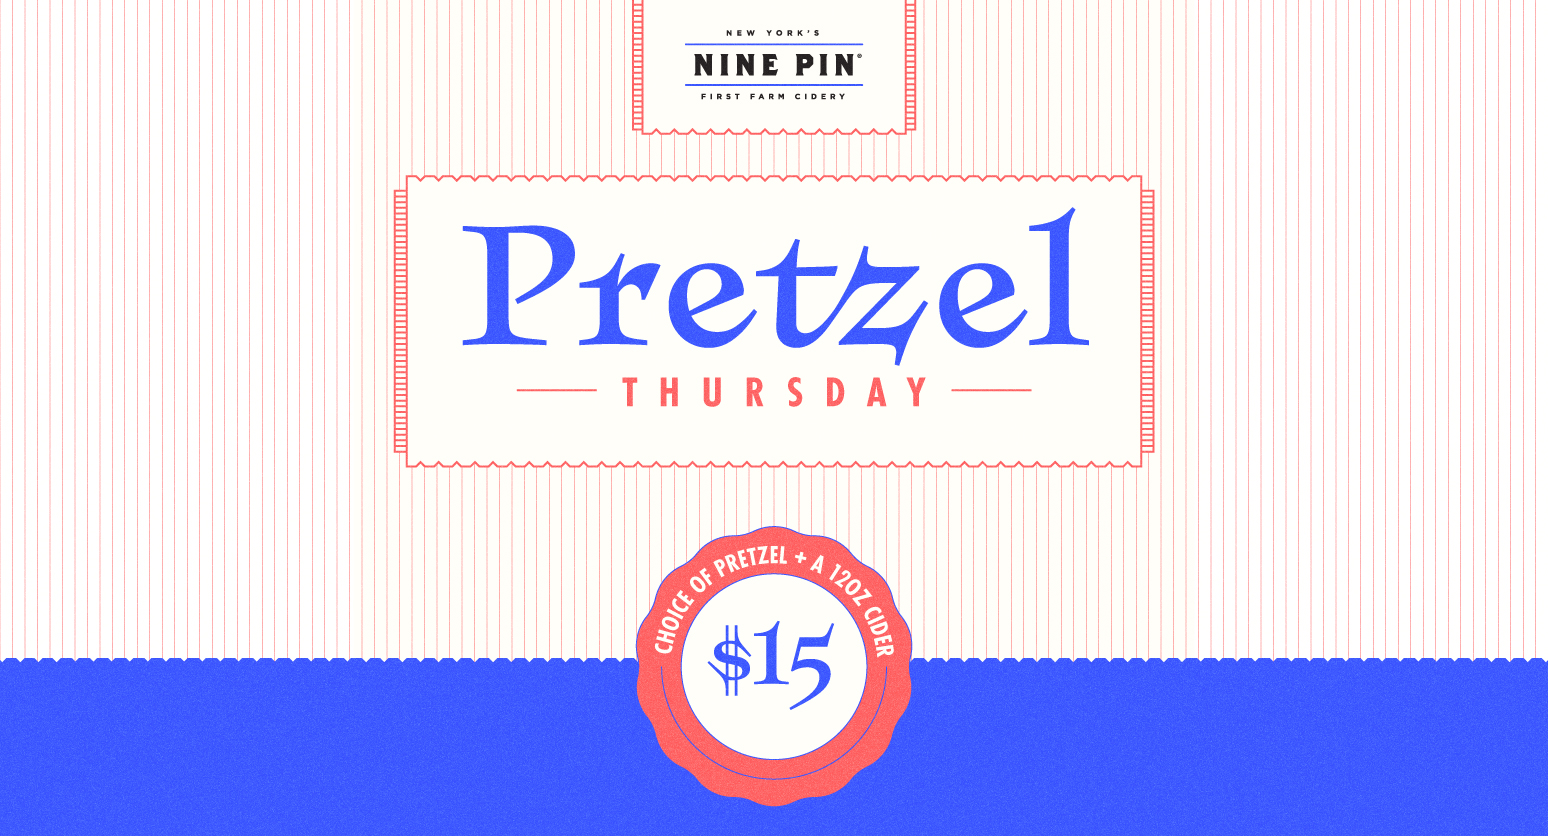 Pretzel Thursday